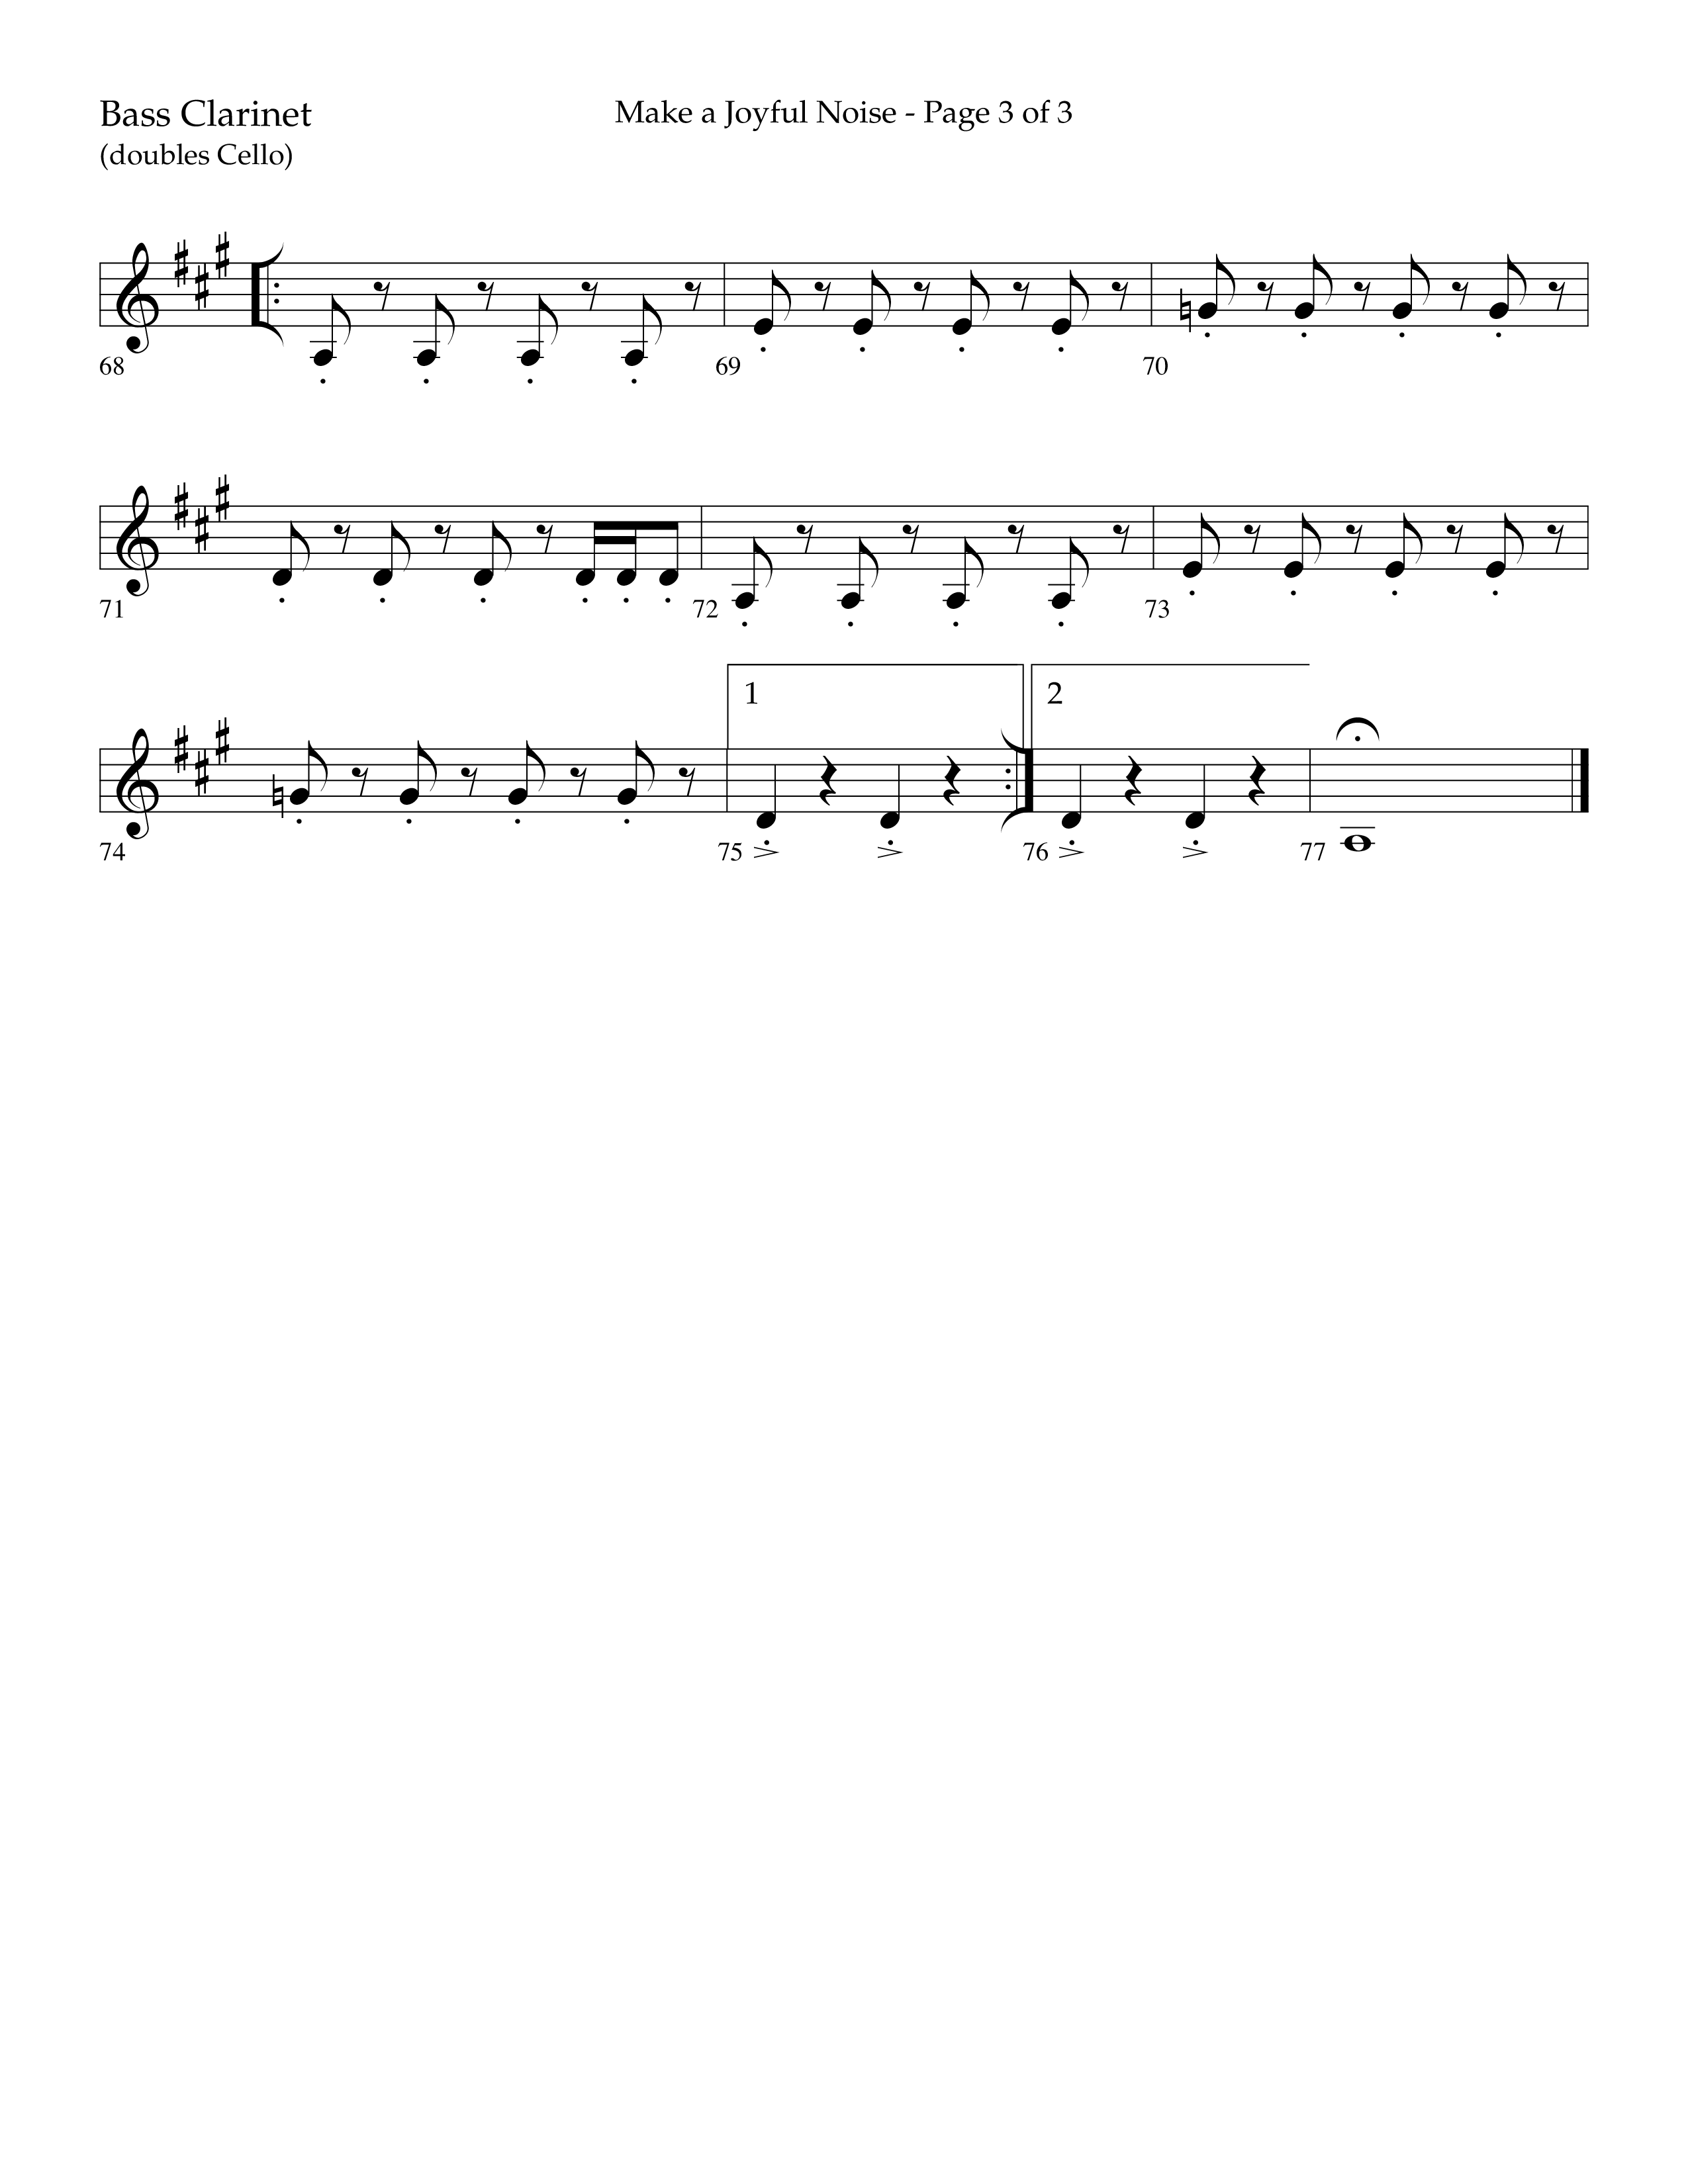 Make A Joyful Noise (Choral Anthem SATB) Bass Clarinet (Lifeway Choral / Arr. David Wise / Orch. Daniel Semsen)